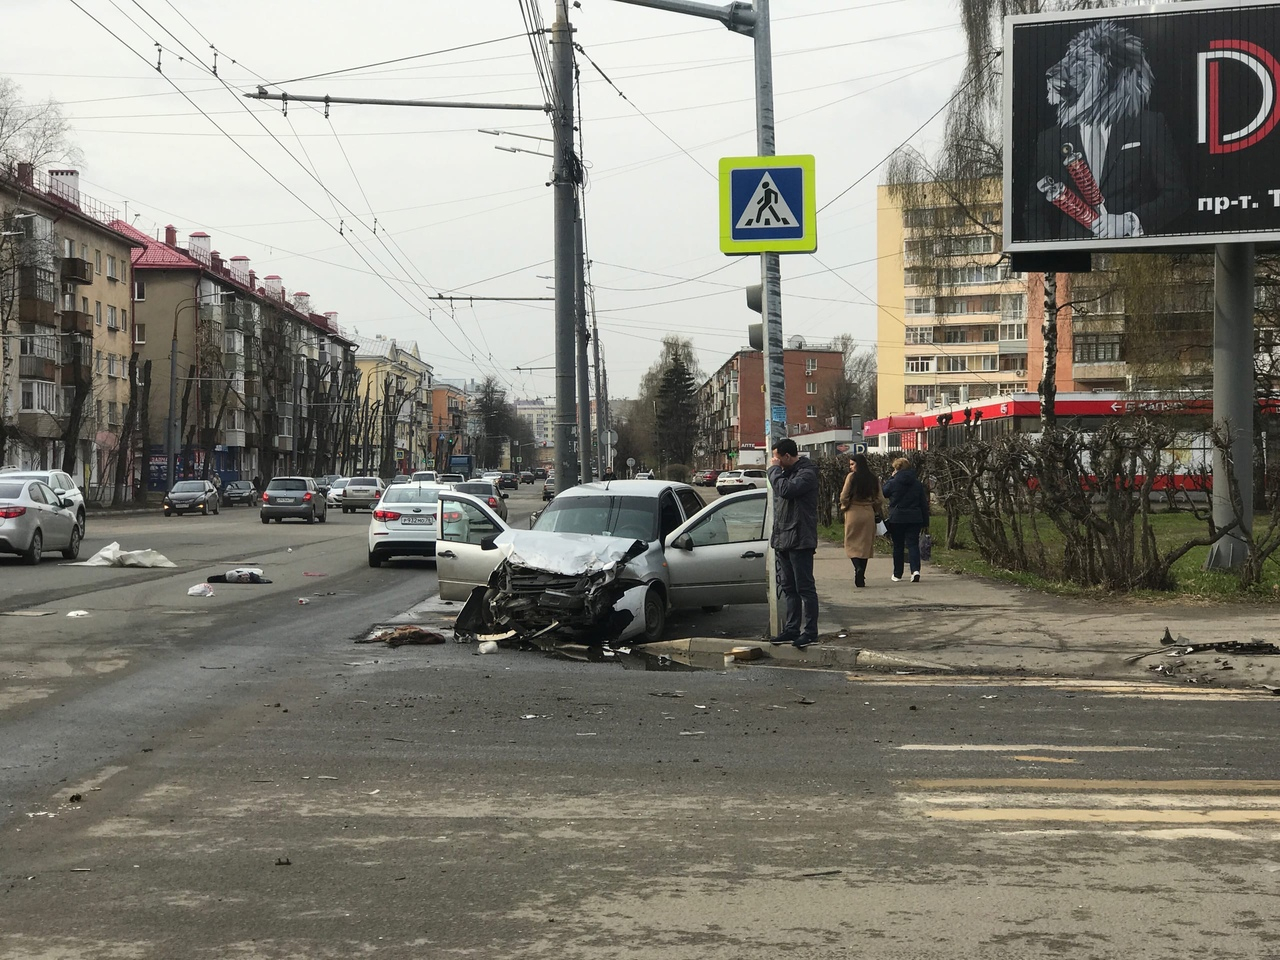 Куски авто разбросаны по улице: тройная авария произошла в центре Ярославля